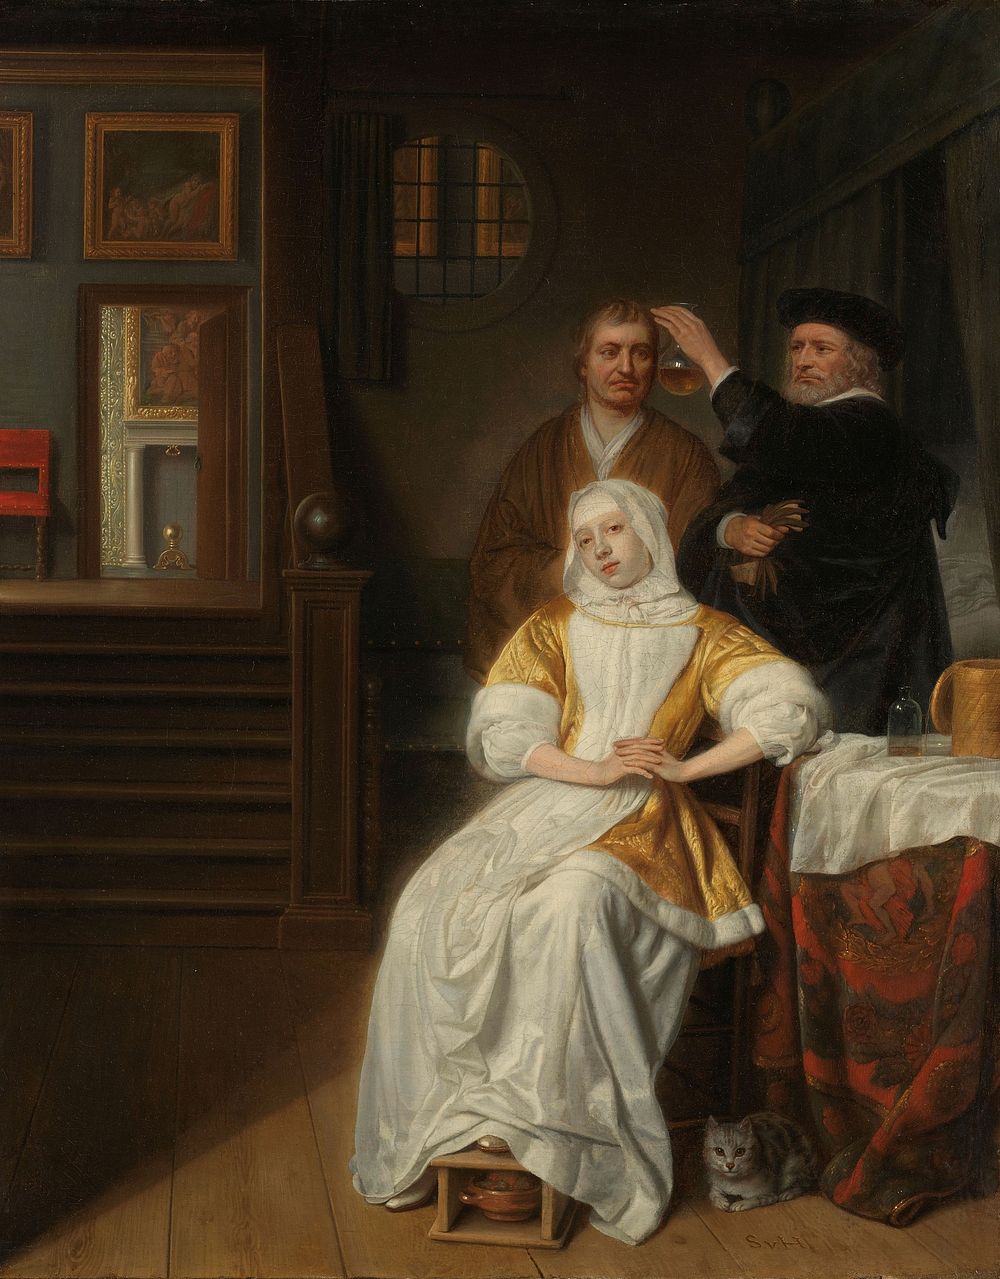 'The Anemic Lady' (1660 - 1678) by Samuel van Hoogstraten